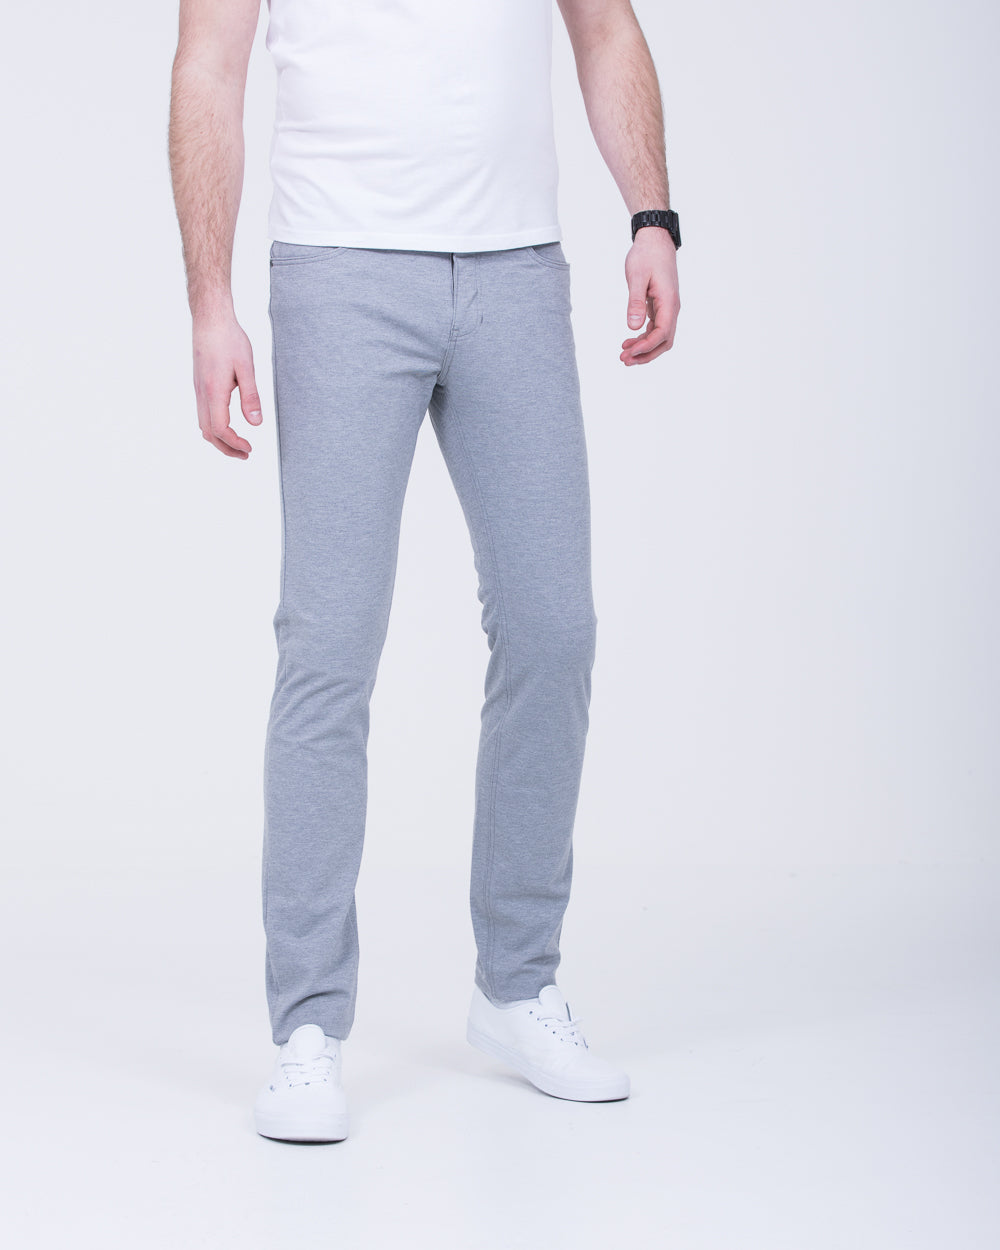 Redpoint Kanata Flexx Slim Fit Tall Trousers (grey)